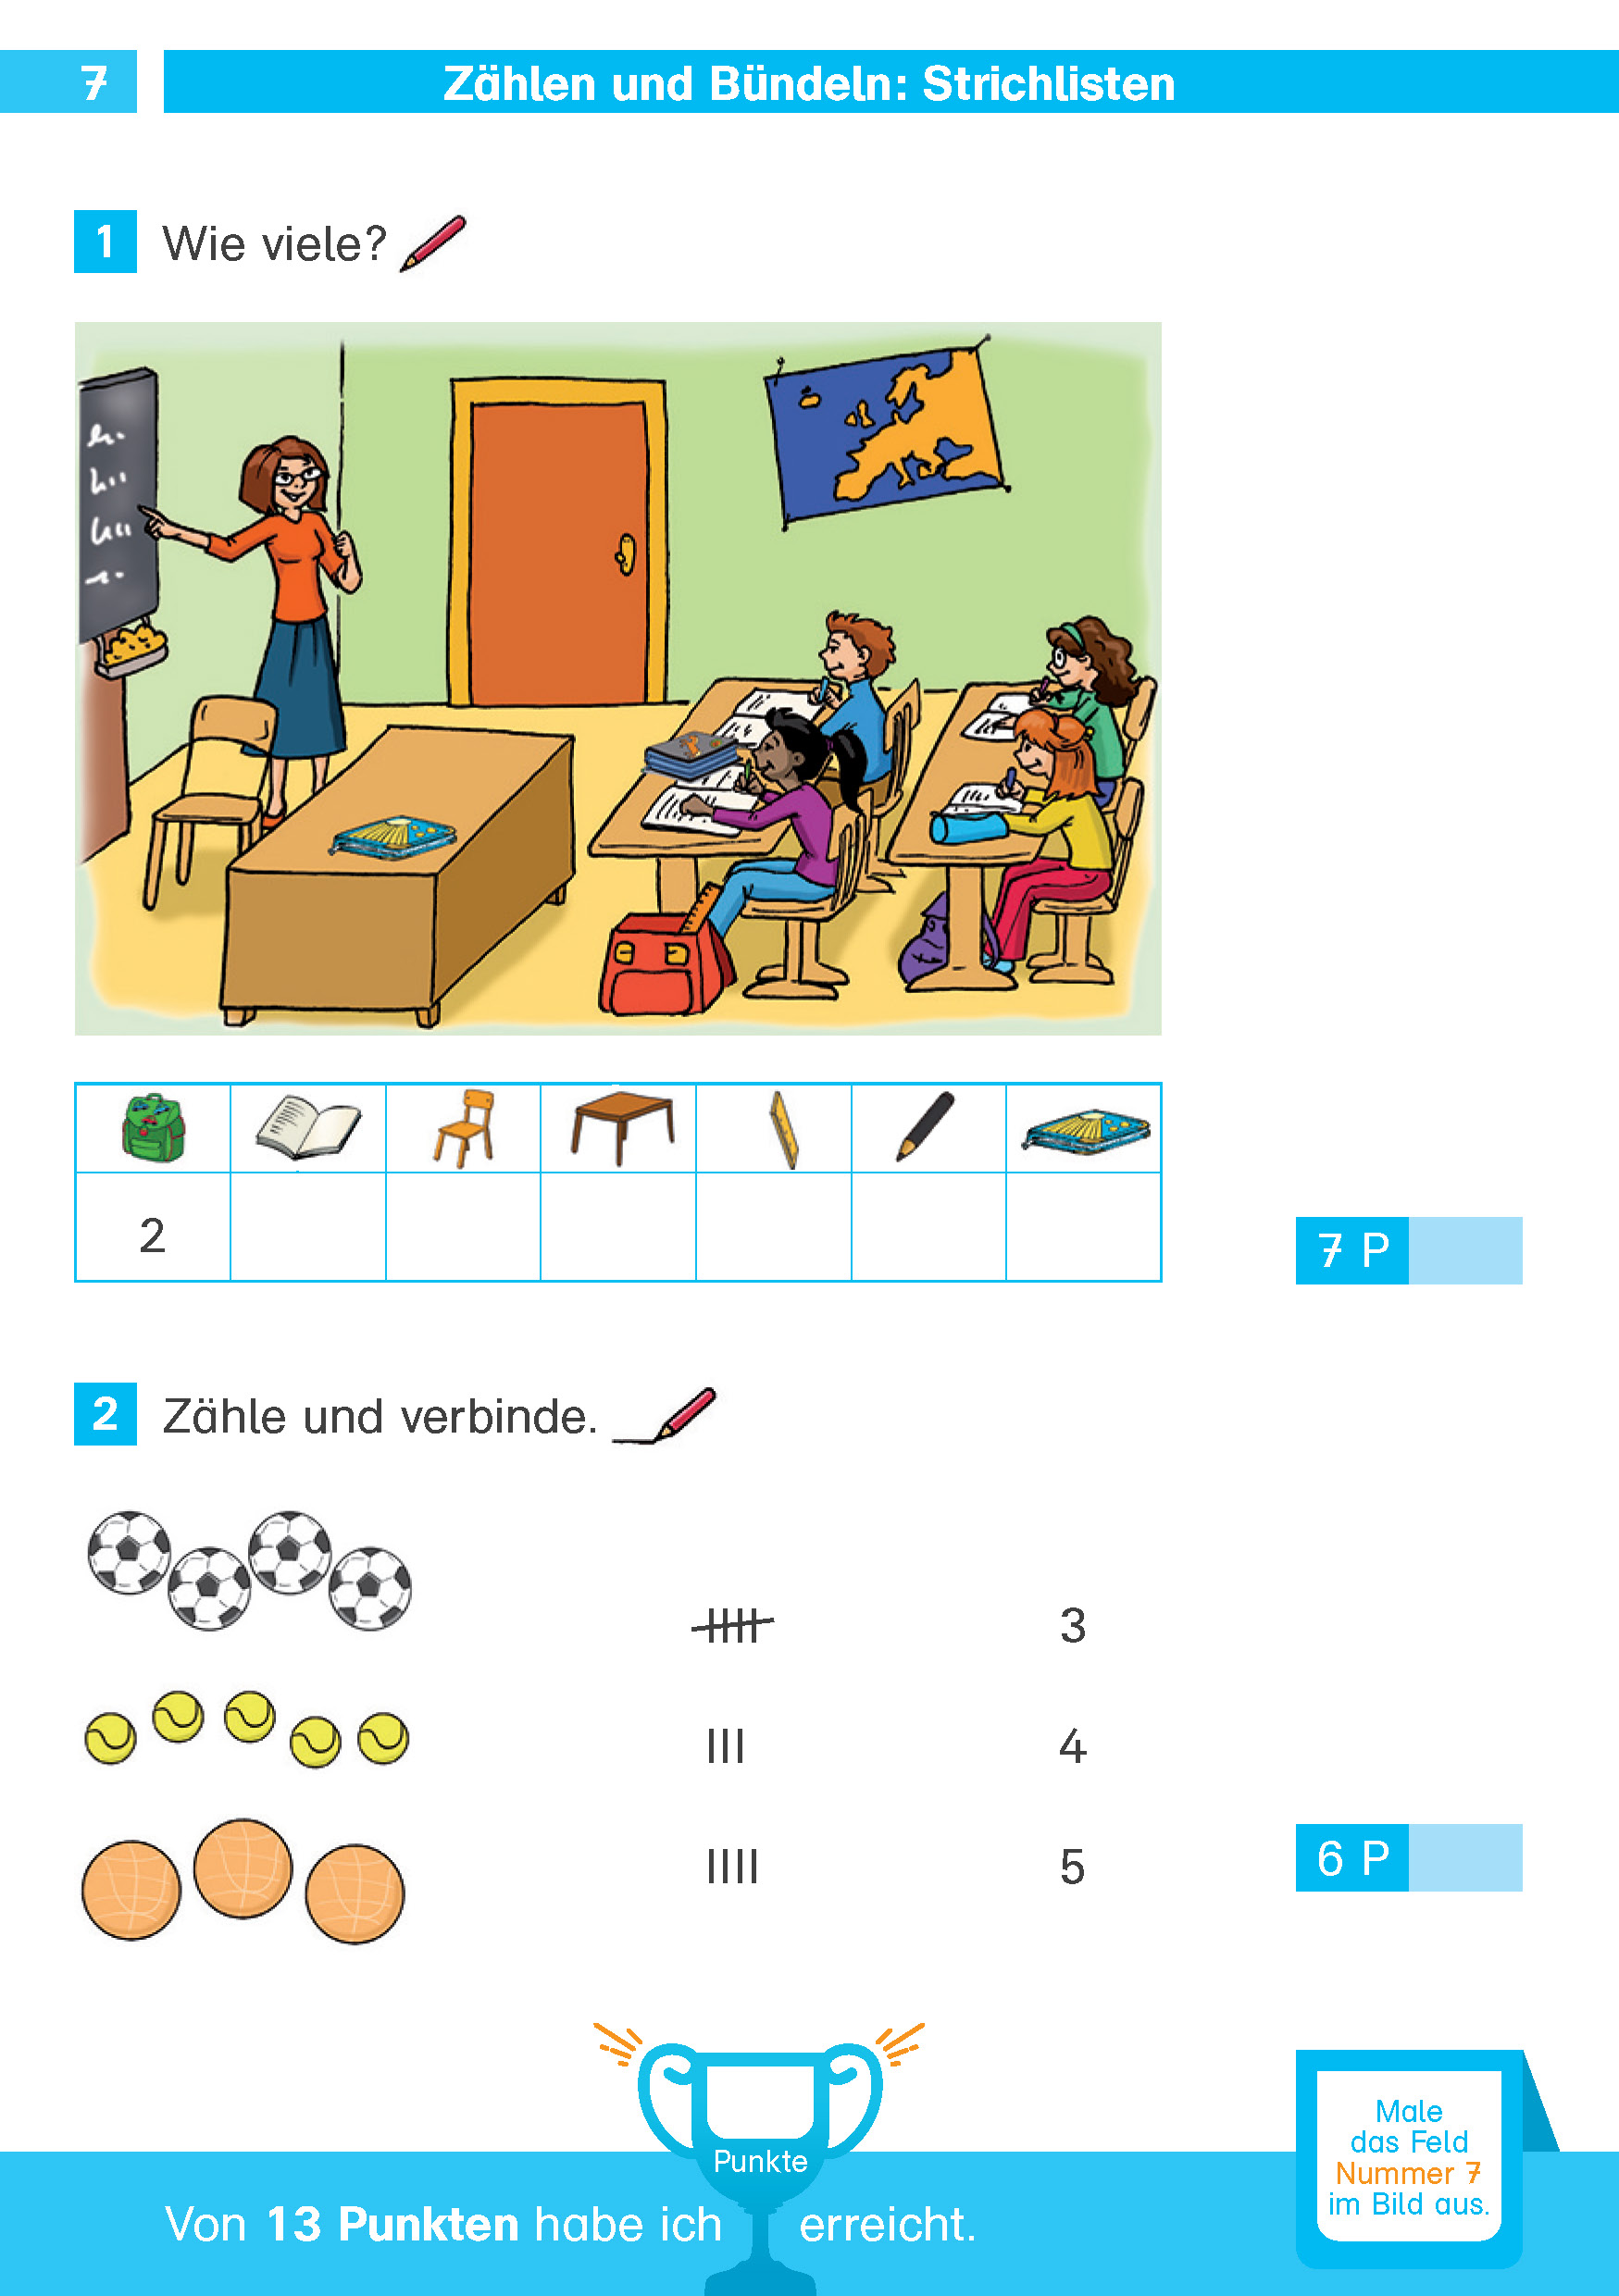 Klett Die Mathe-Helden: Mathe-Testblock So gut bin ich! 1. Klasse